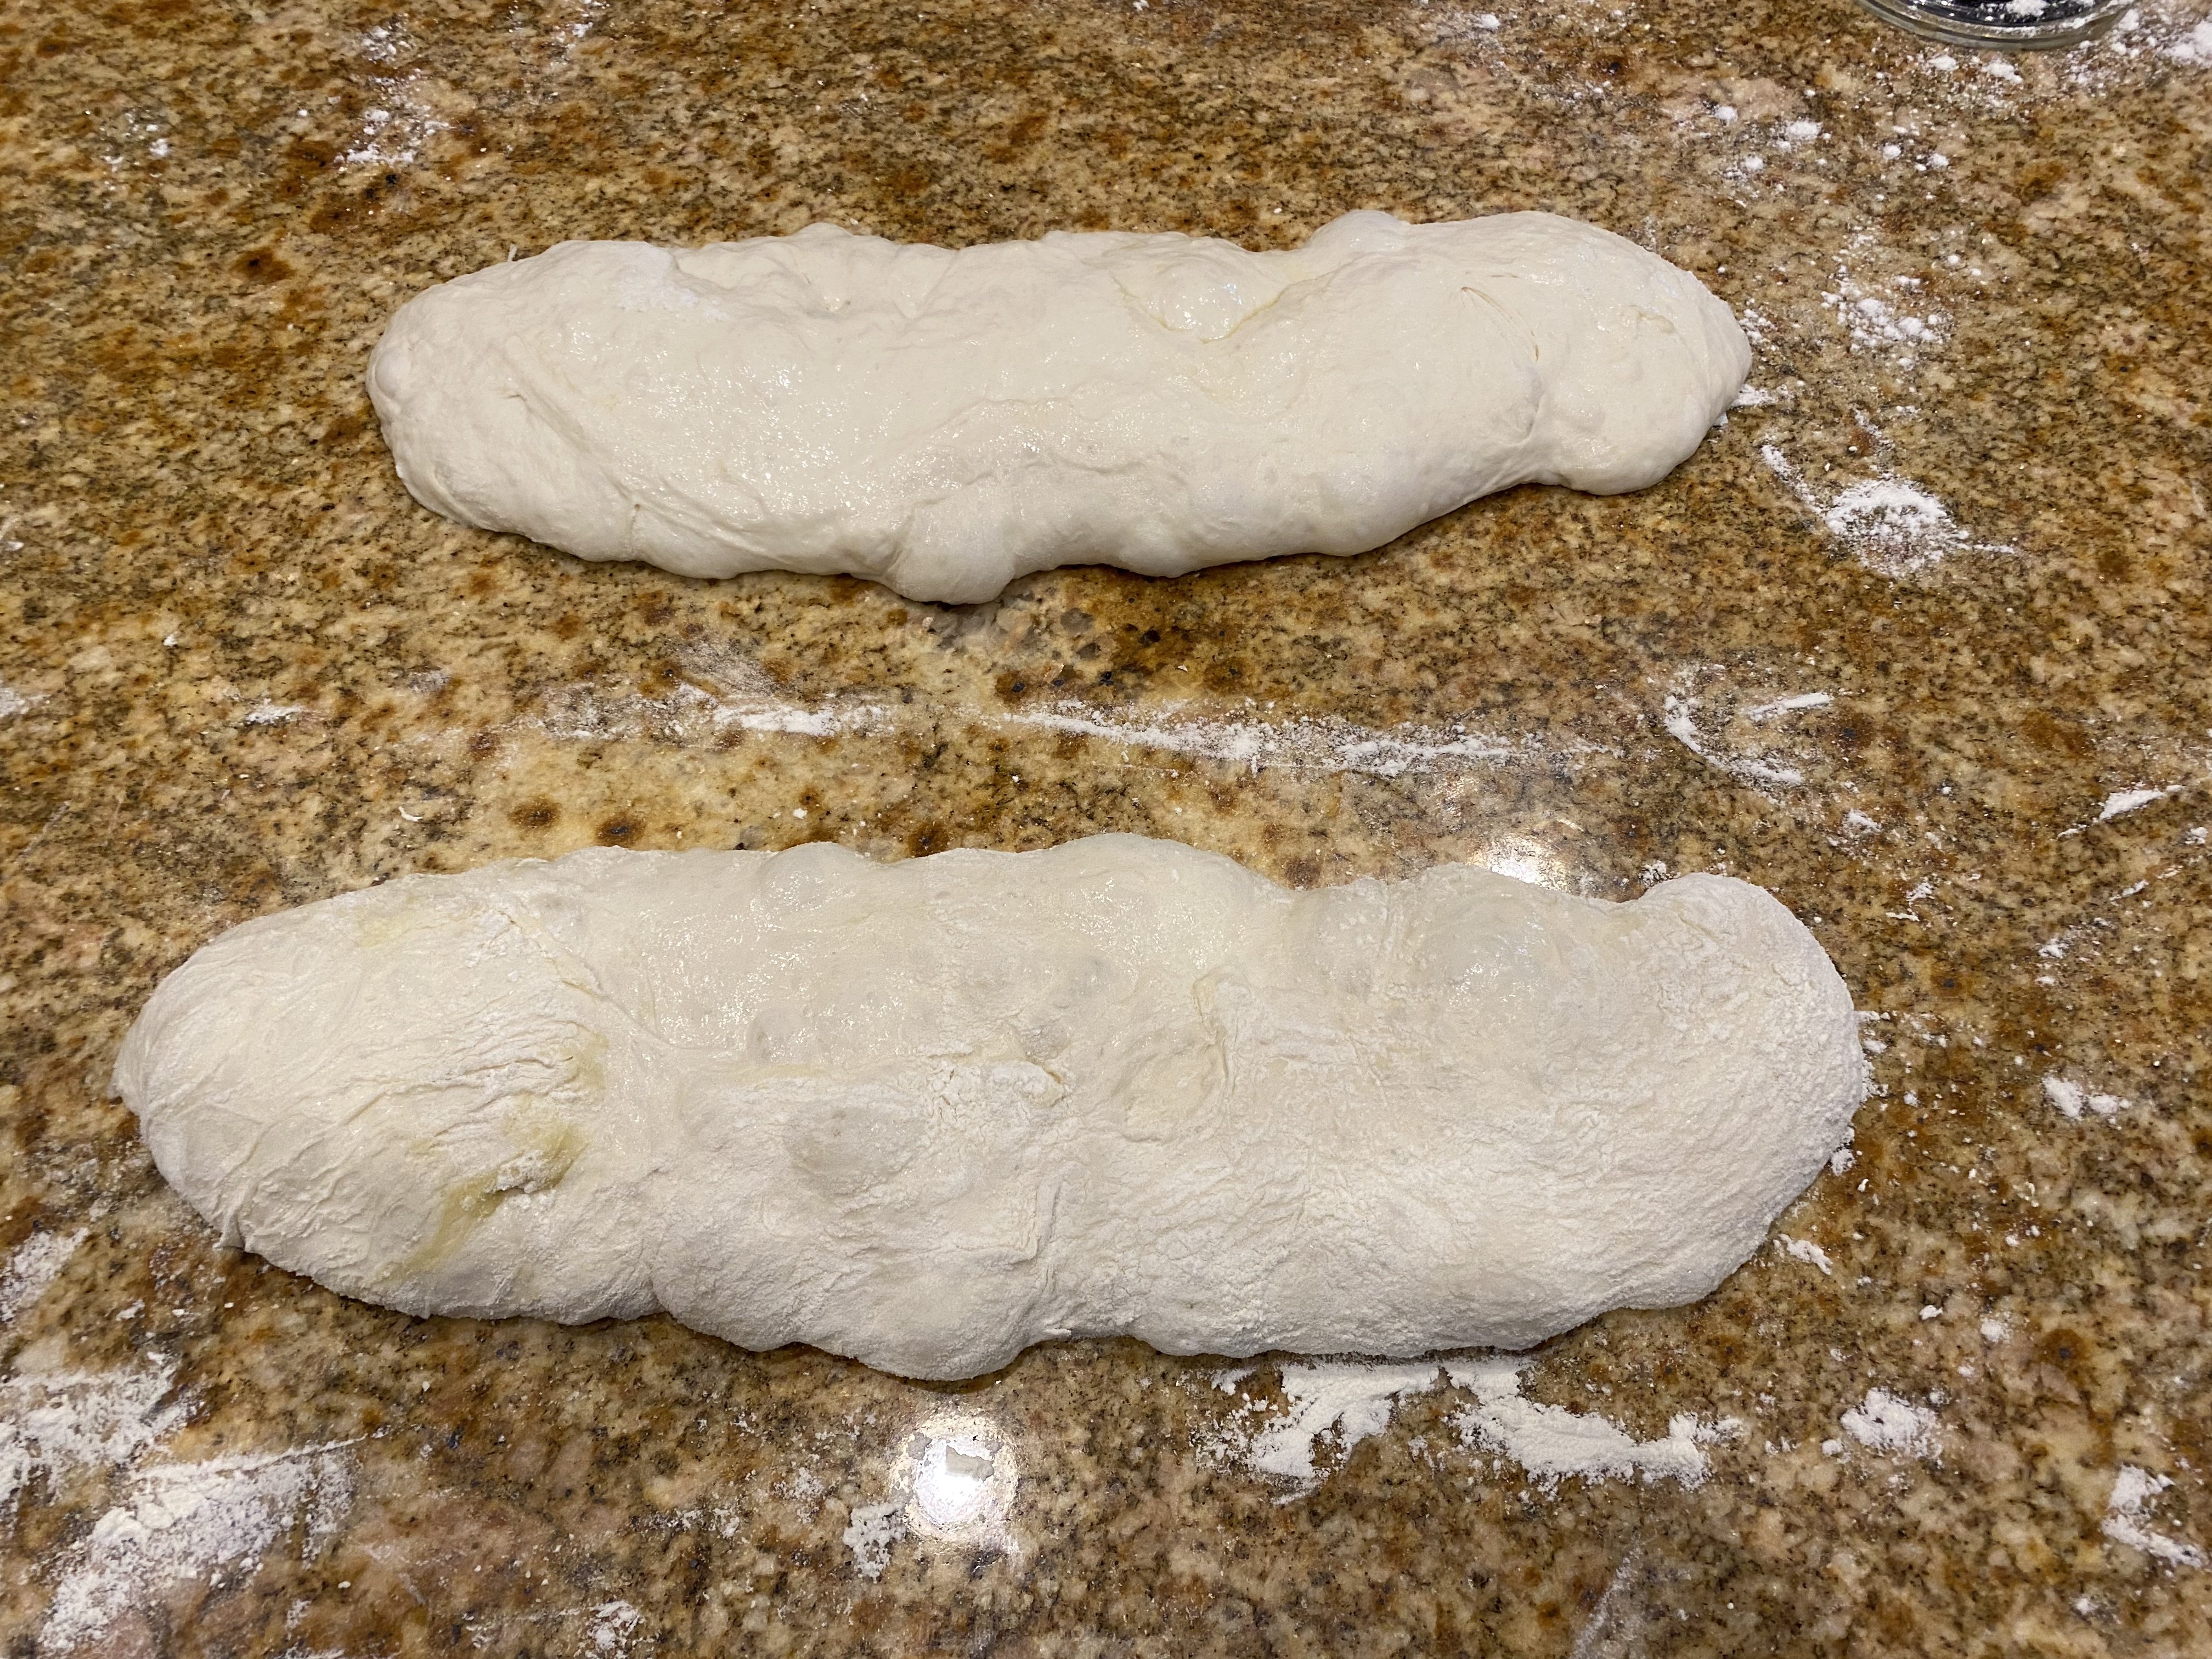 Shaped Loaves